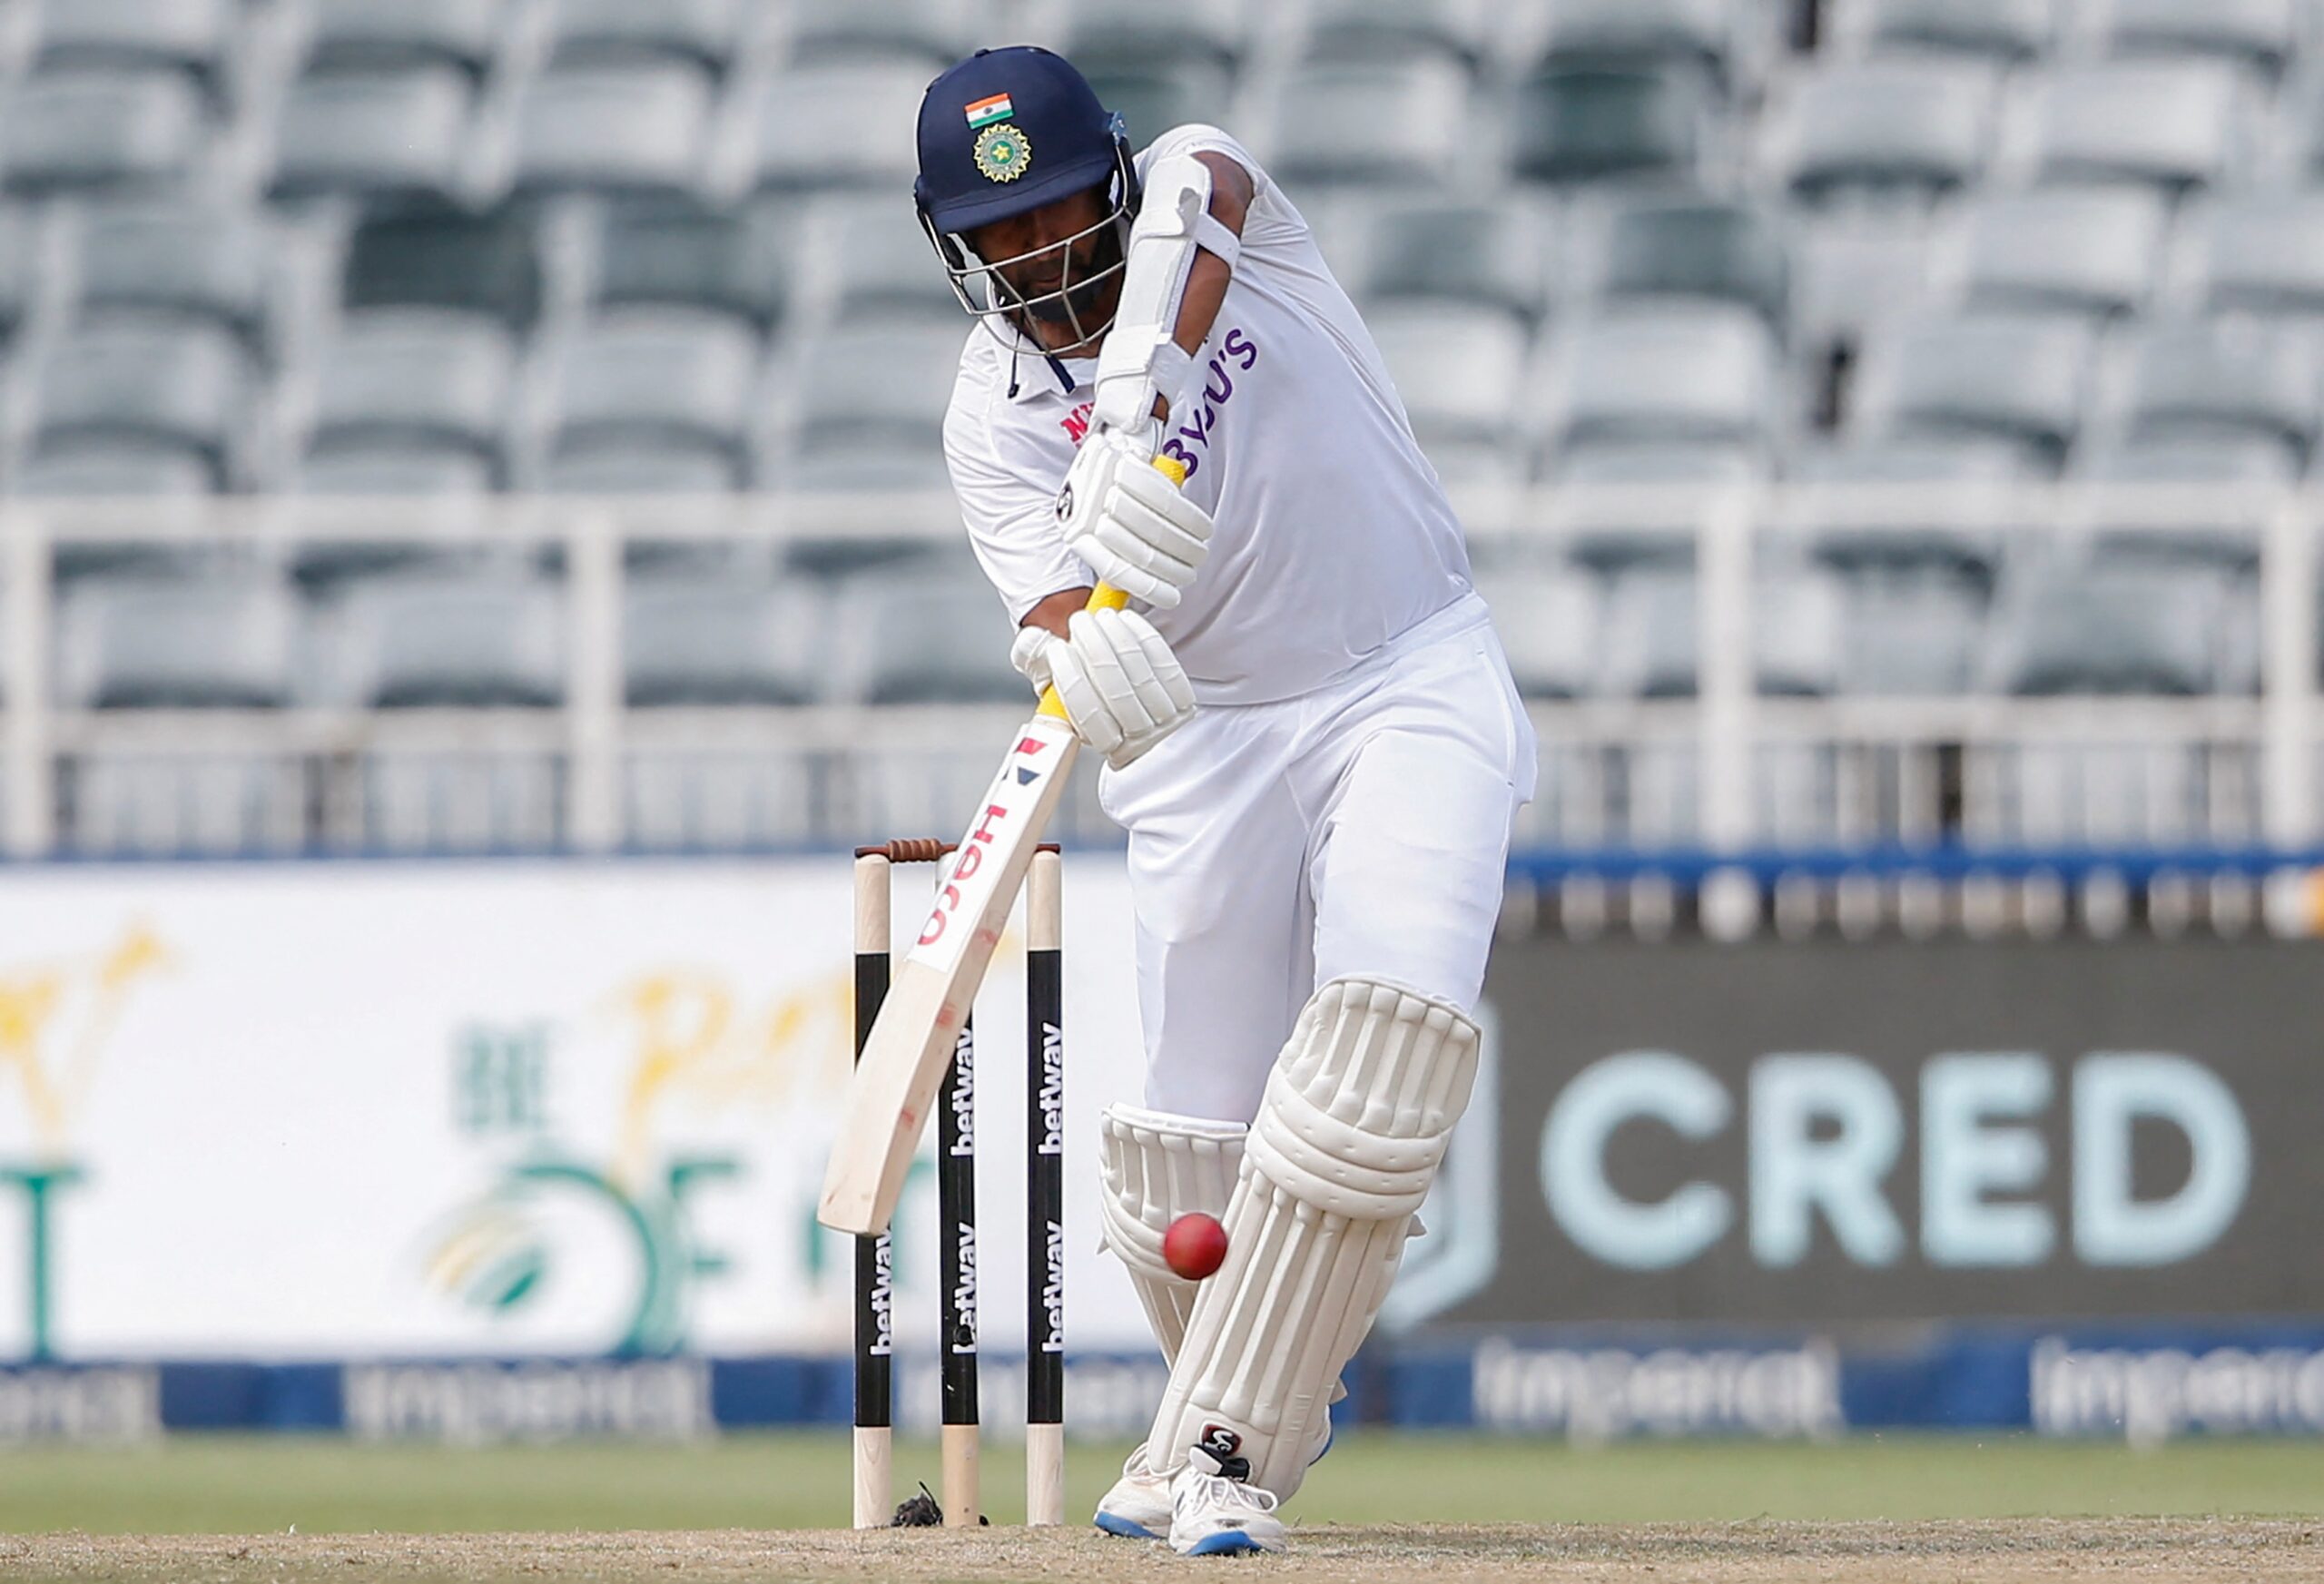 इंग्लैंड में टेस्ट मैच को लेकर इस भारतीय खिलाड़ी ने नहीं बनायी कोई योजना, कहा, अभी घर पर उठा रहा लुत्फ 5